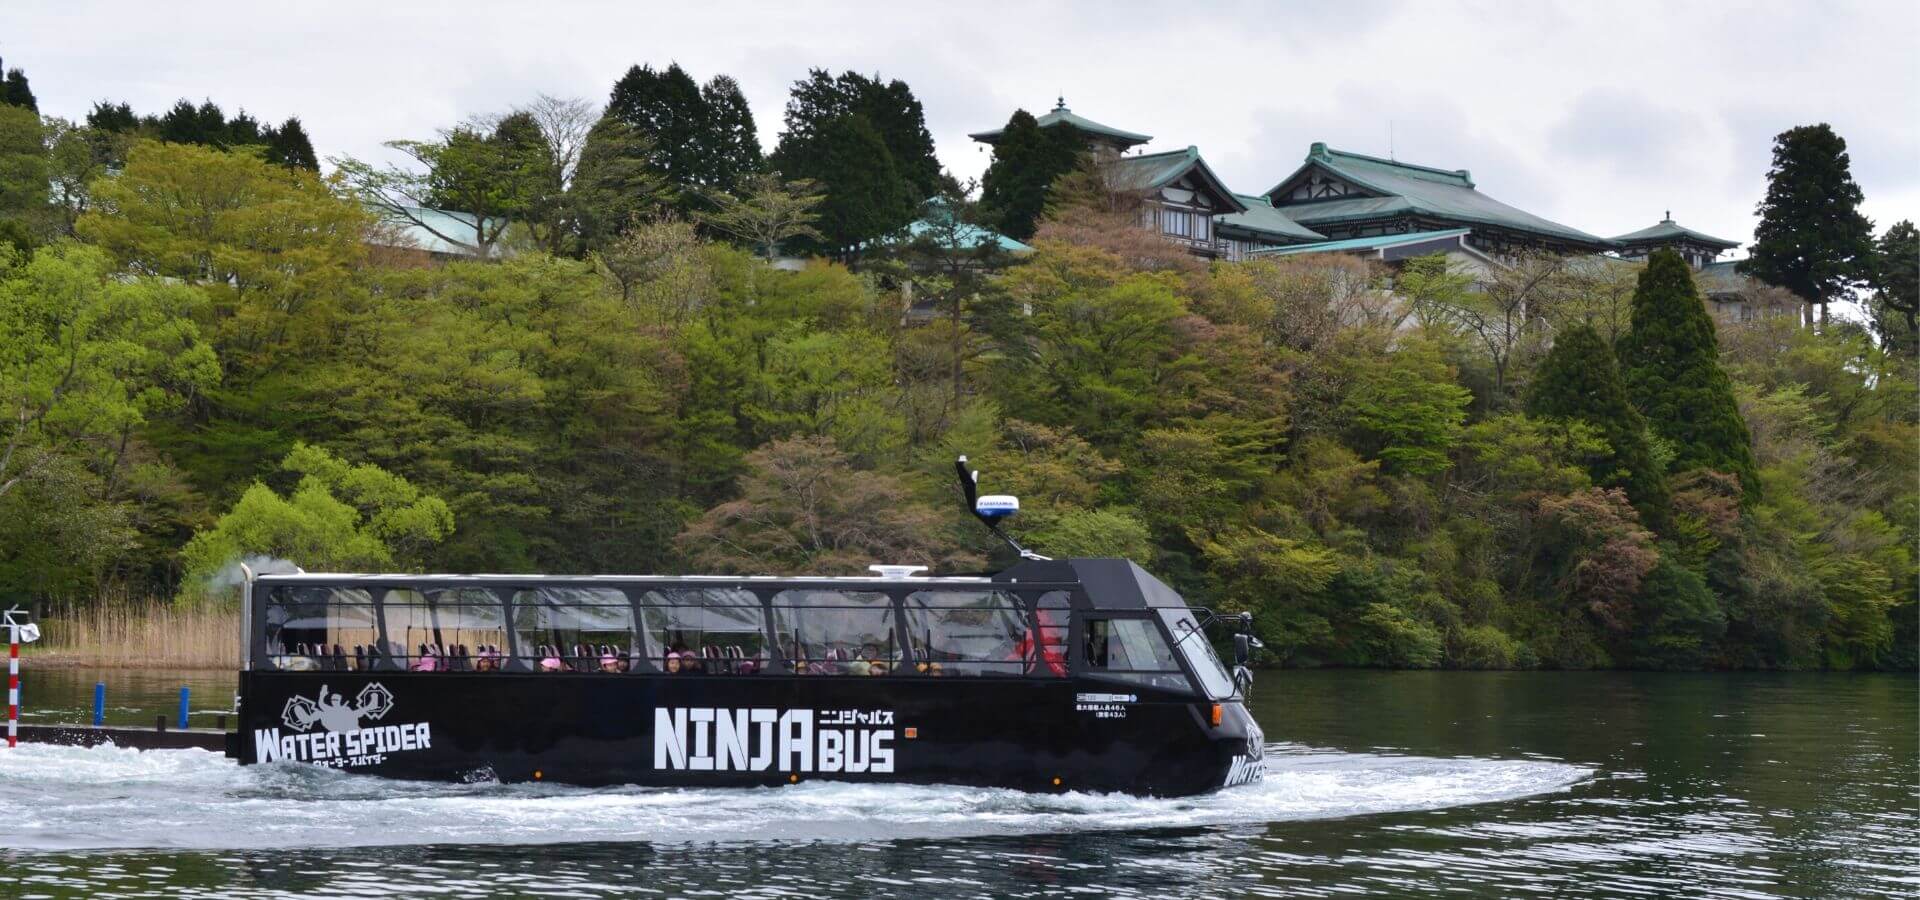 《Hakone-en》NINJA BUS / WATER SPIDER